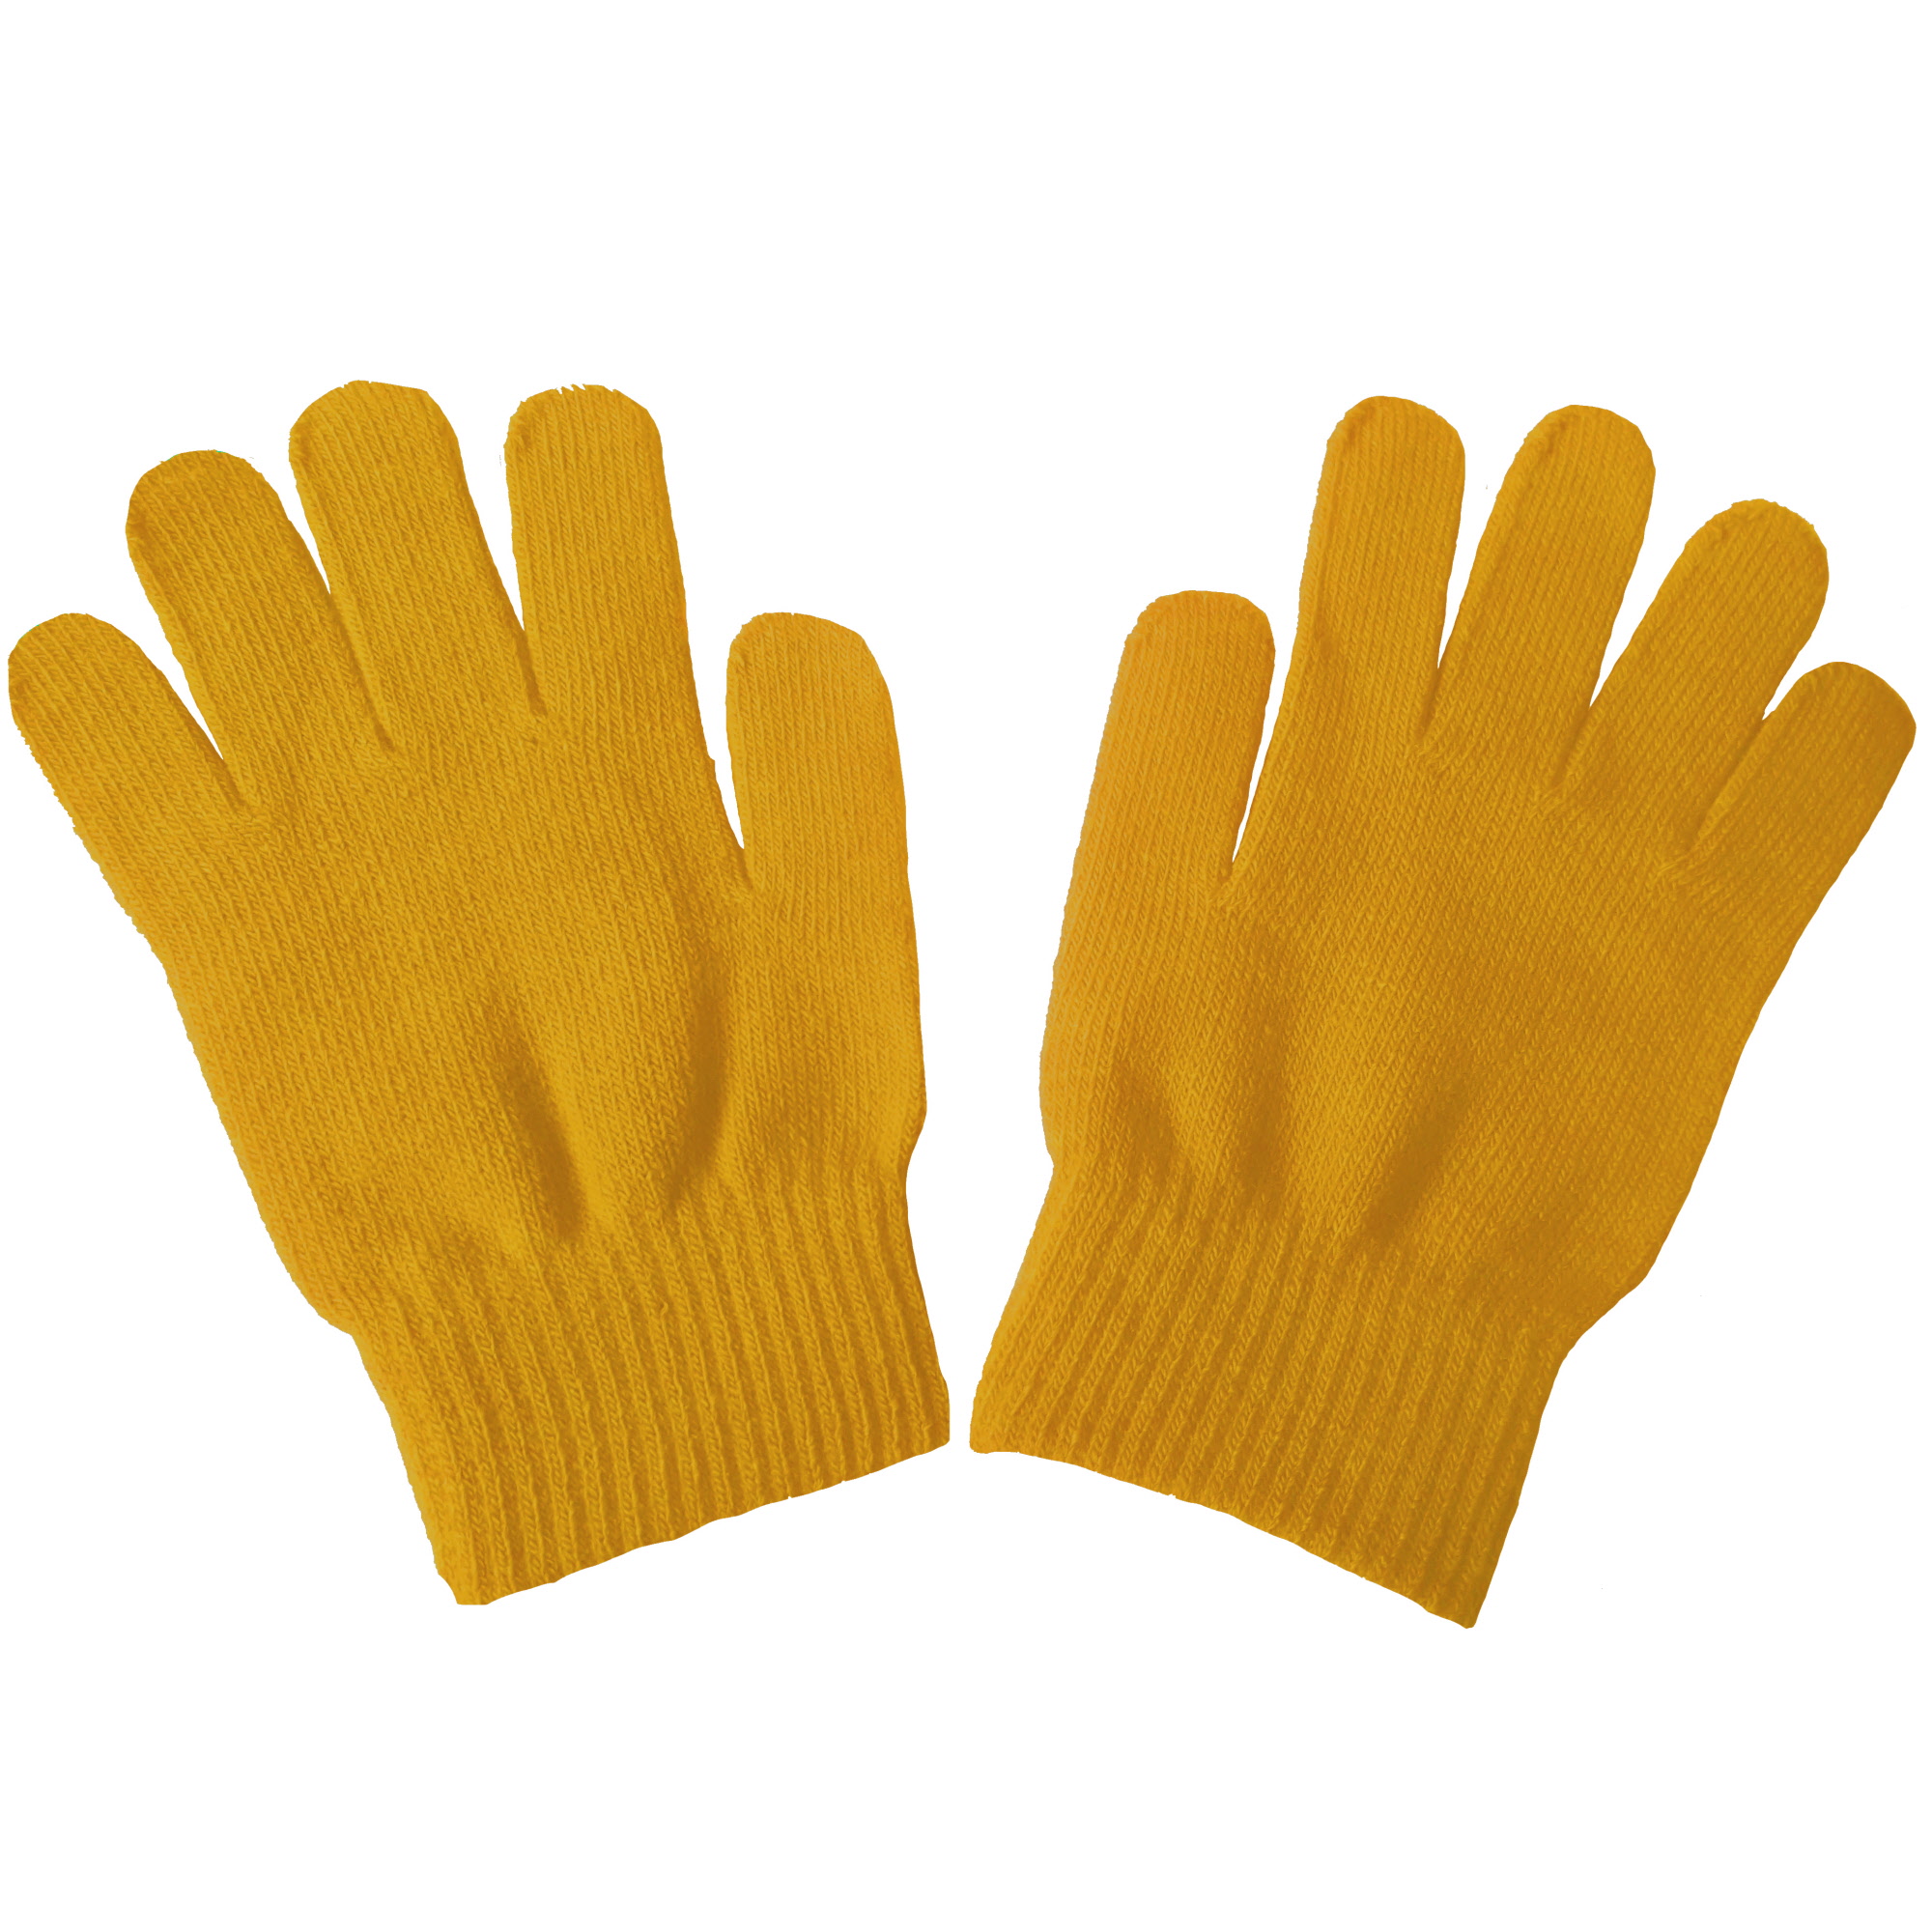 handschoenen_handschoentjes_wanten_voor_aan_de_rekstok_brug_schlaufen_zwaaien_slingeren_turnen_gymnastiek_geel_gele_yellow